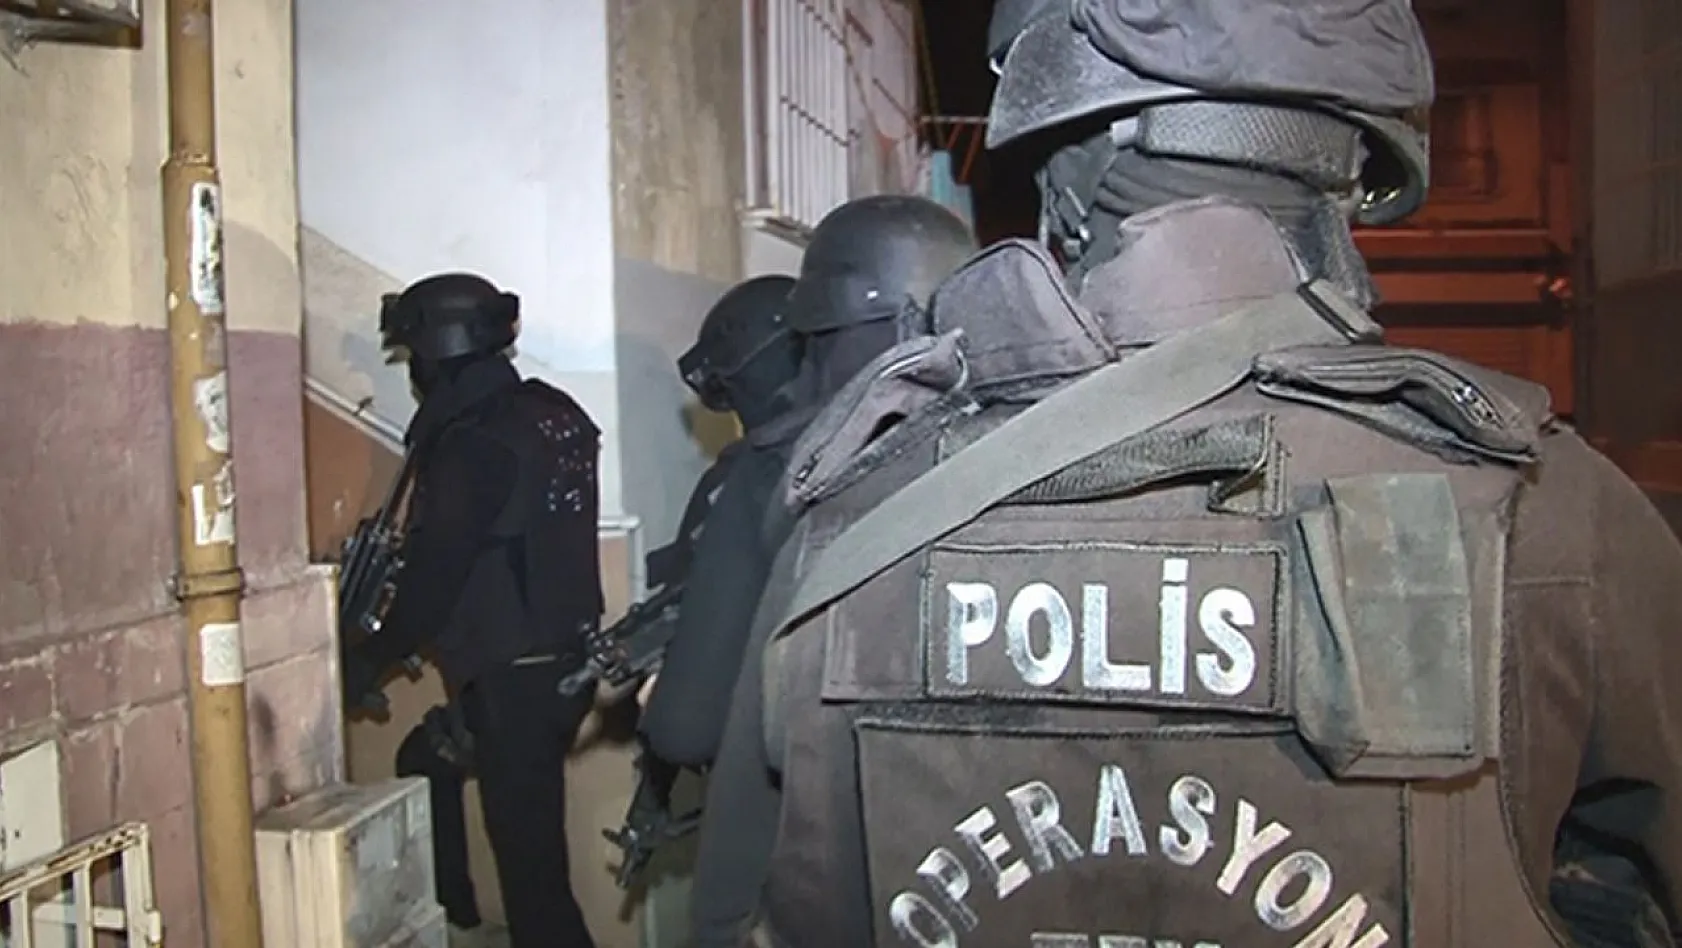 Organize suç çetelerine yönelik 50 ilde 'Silindir' operasyonu: 400 gözaltı